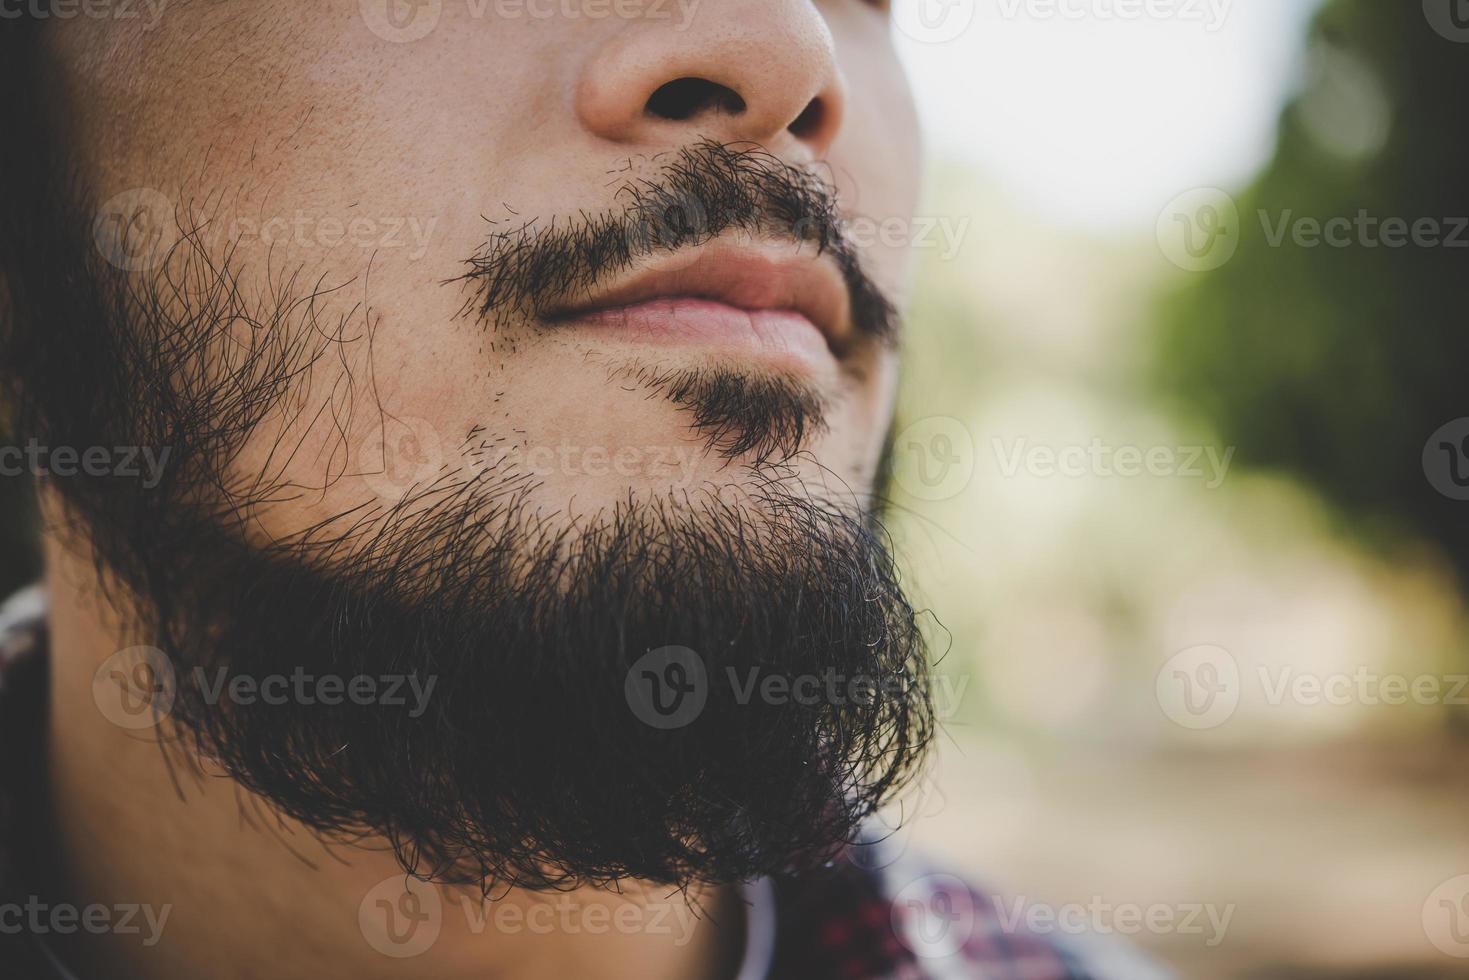 Close-up of man's beard photo